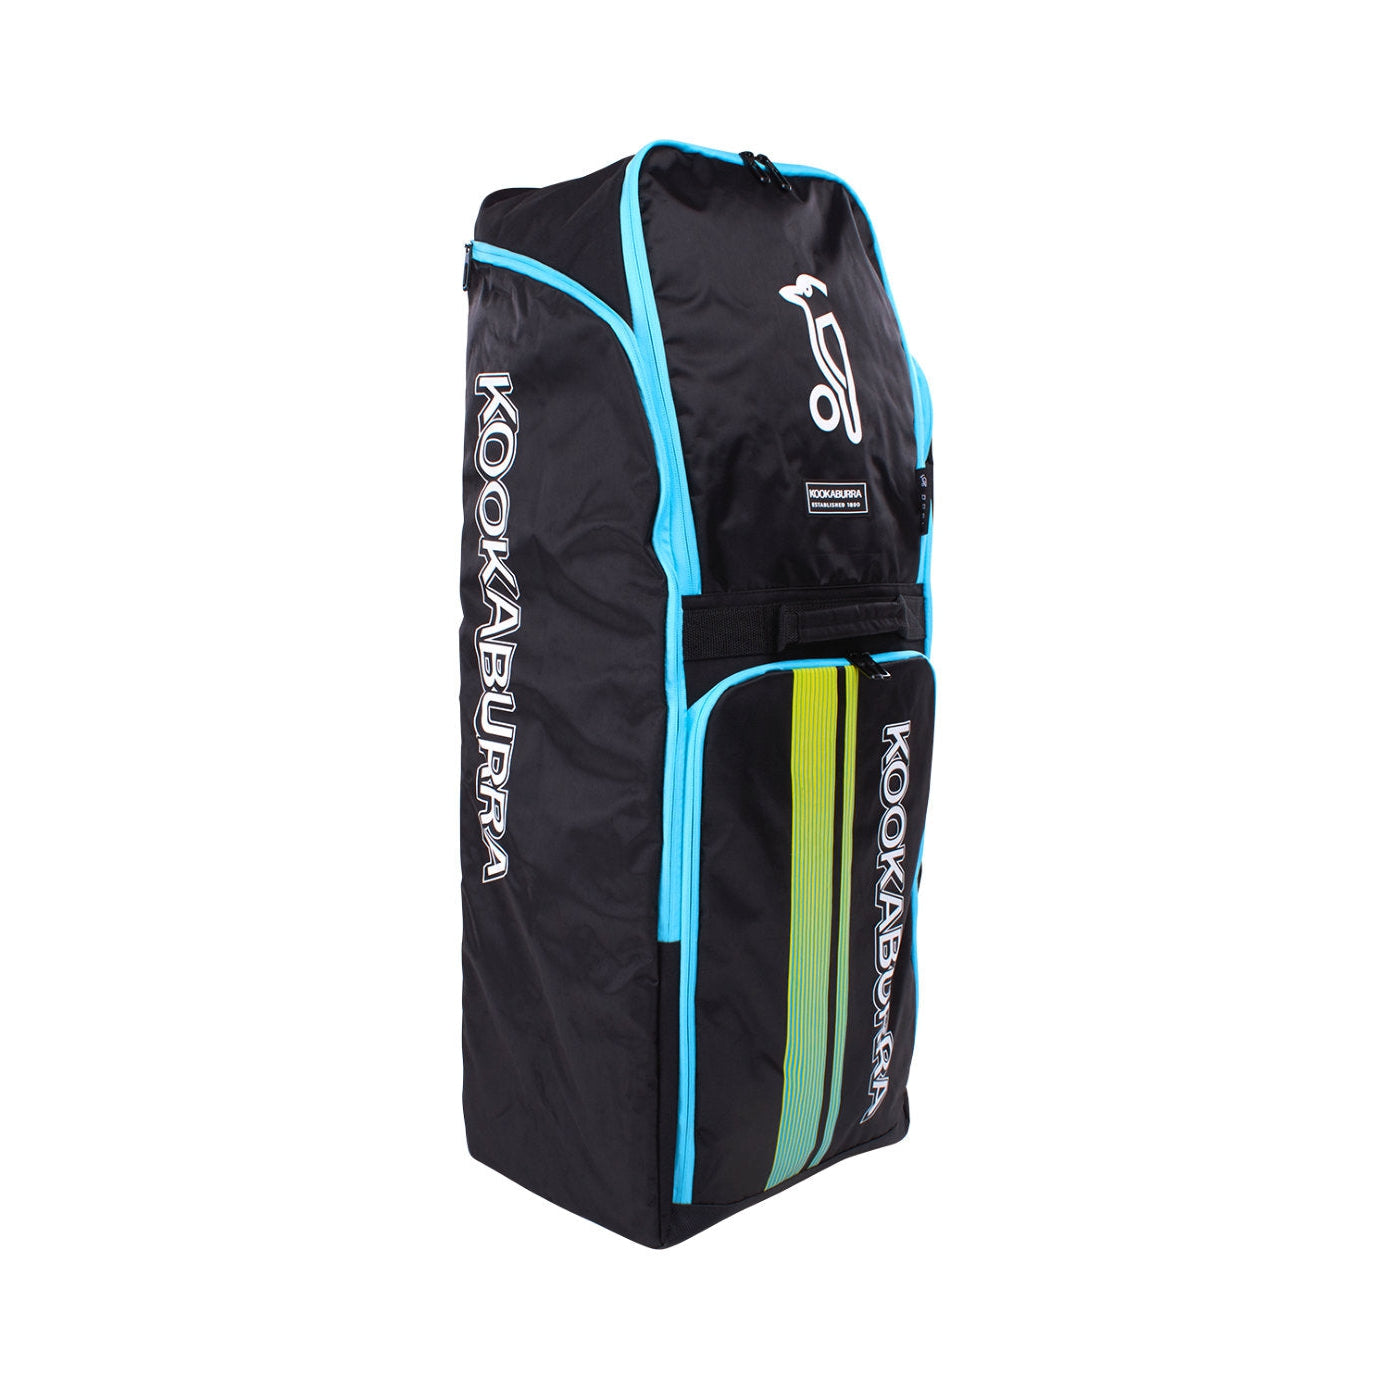 Kookaburra Cricket Bag Duffle D4500 Black/Aqua